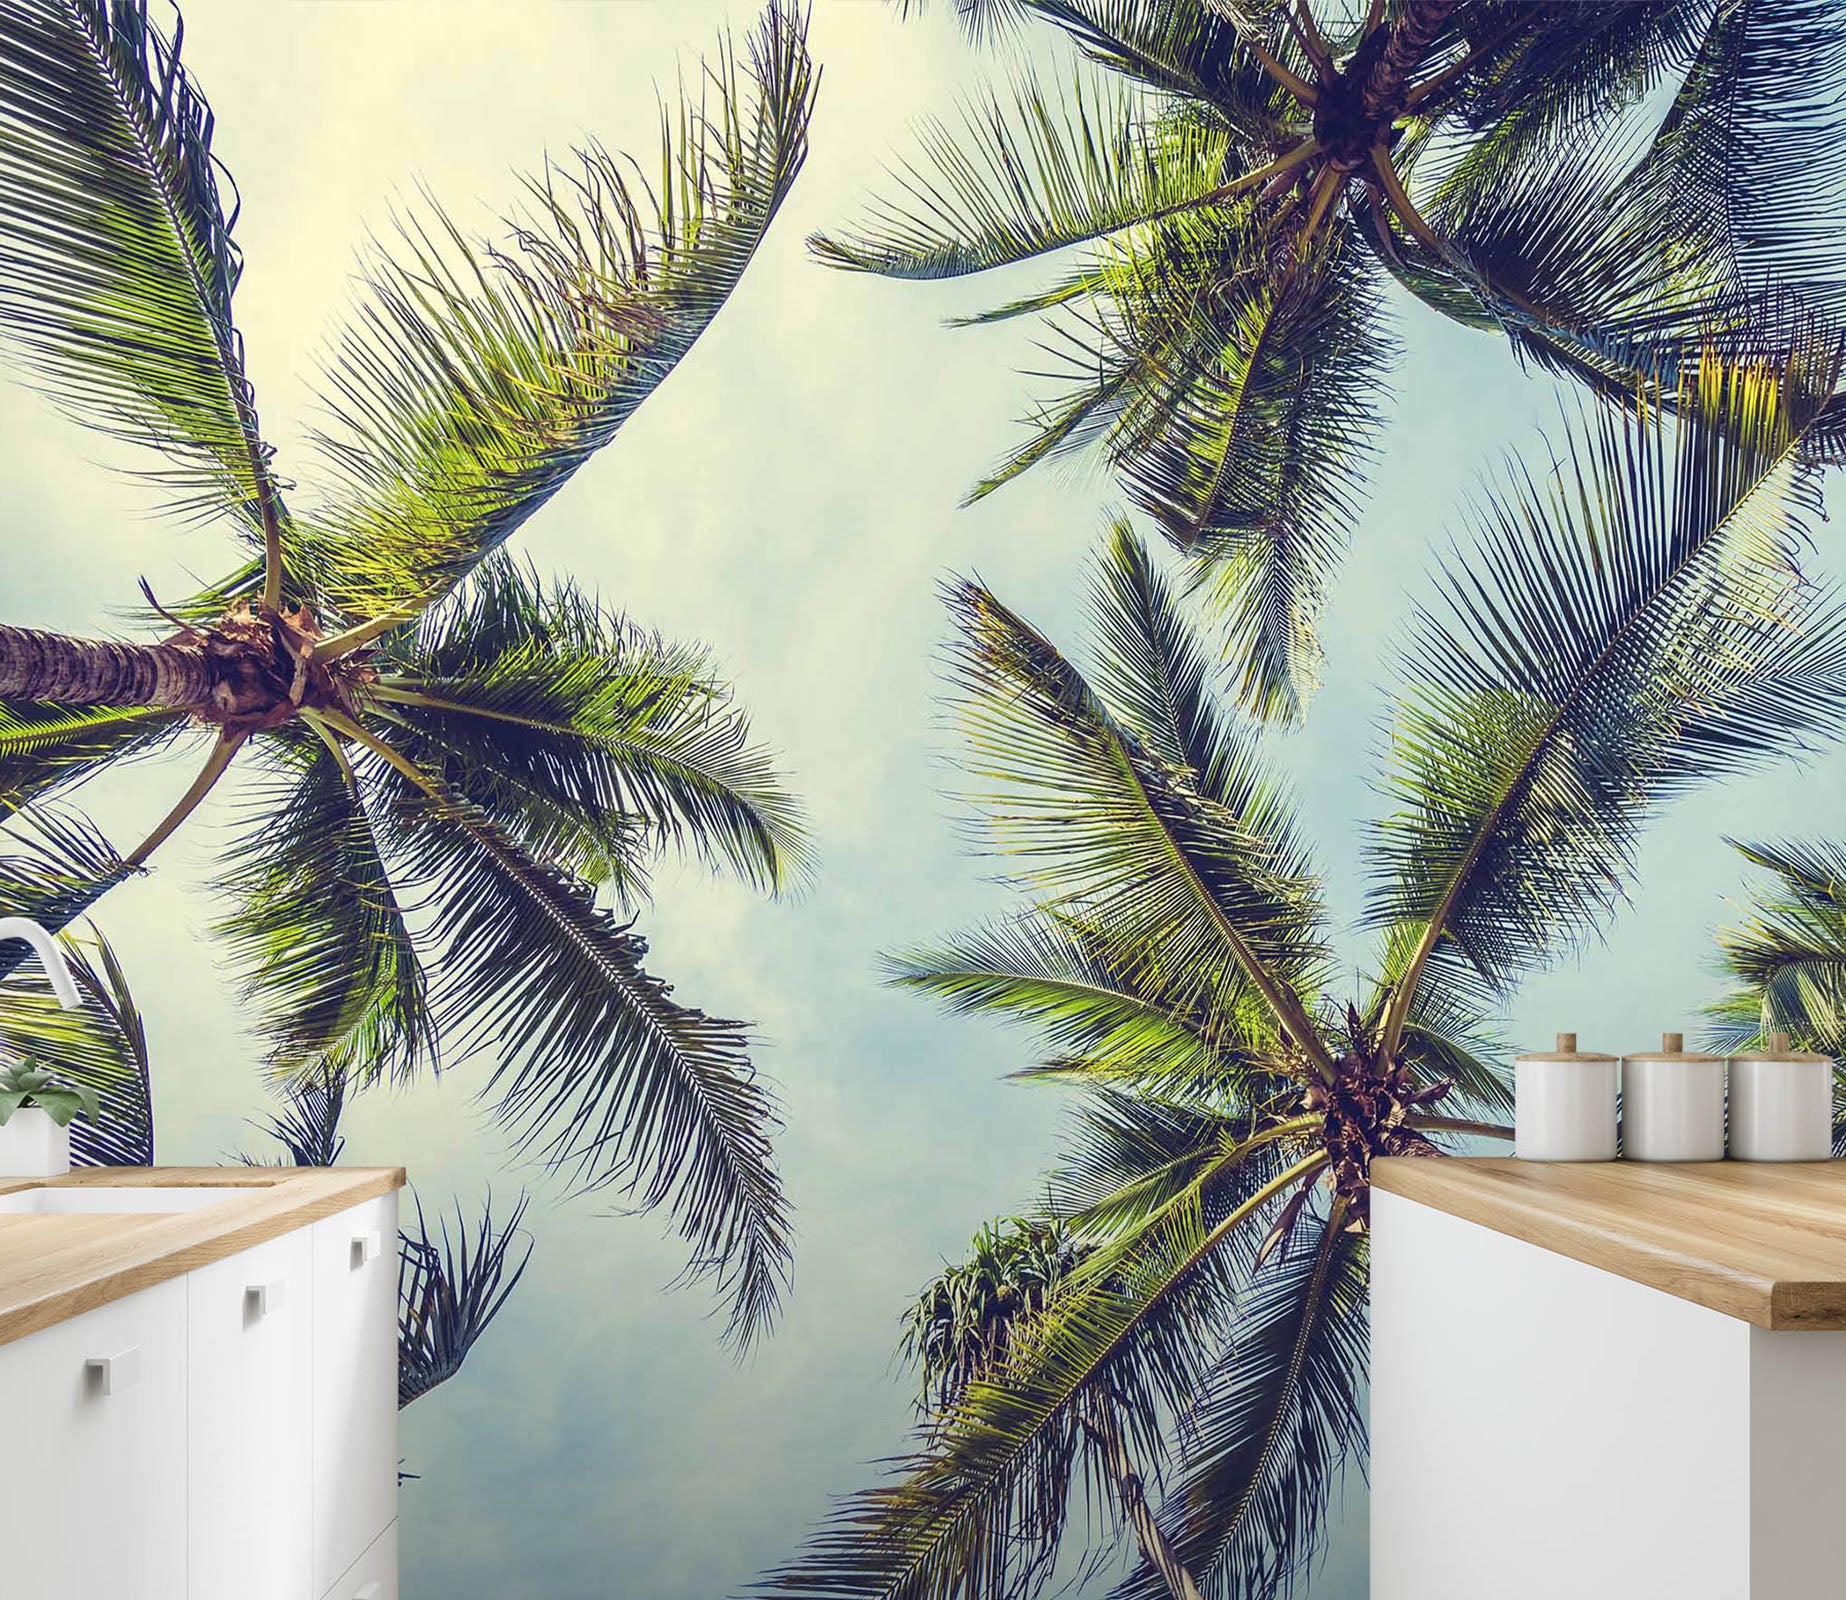 3D Coconut Tree 88 Wall Murals